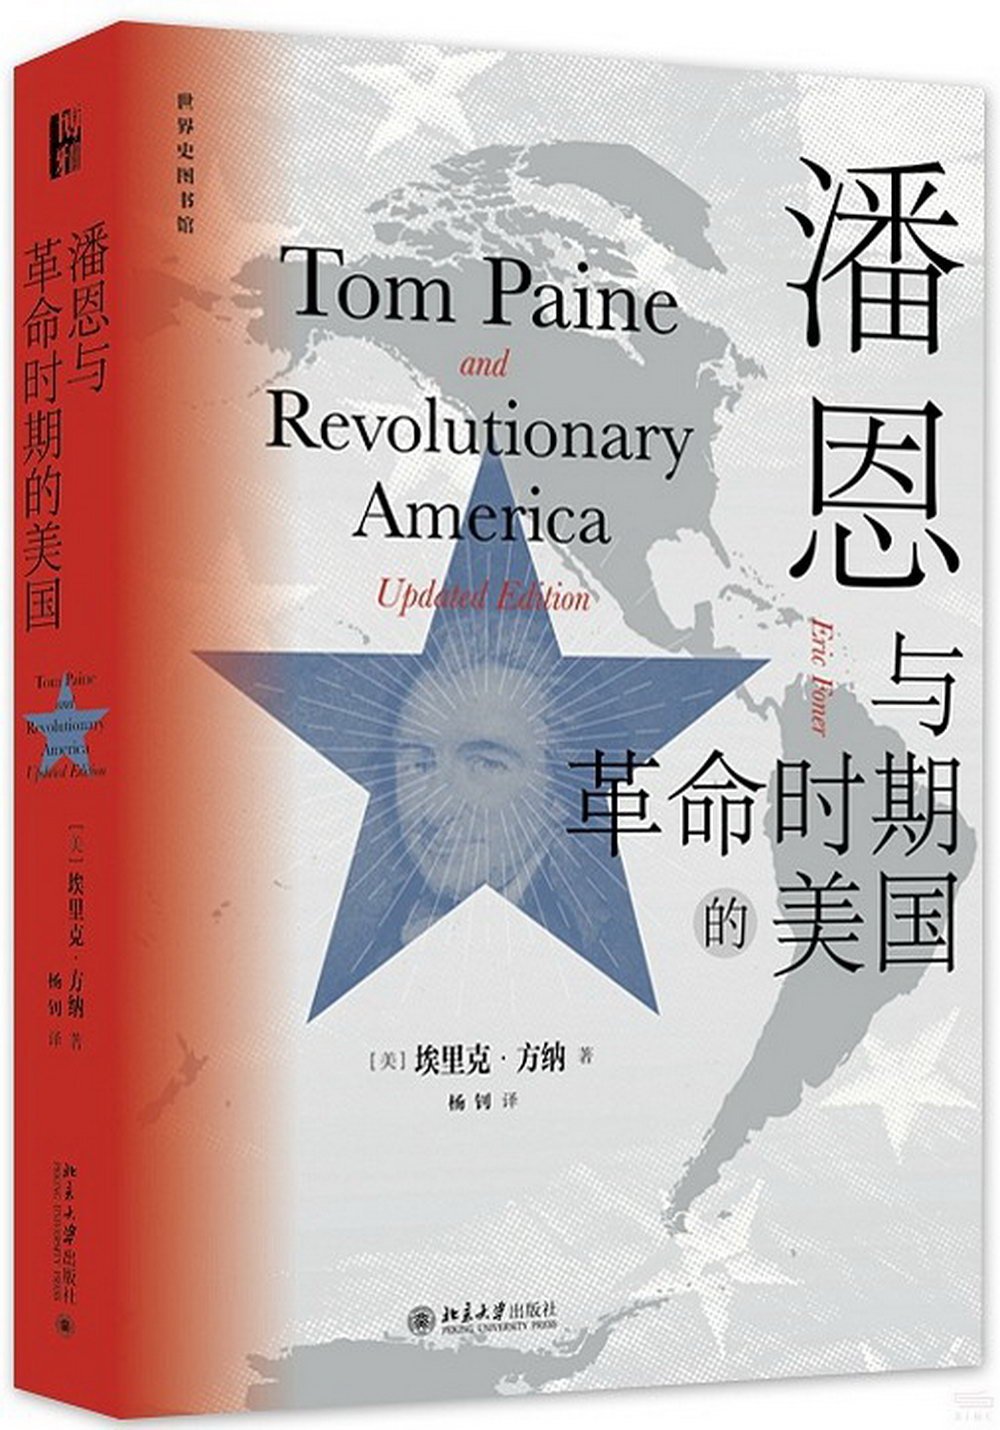 潘恩與革命時期的美國